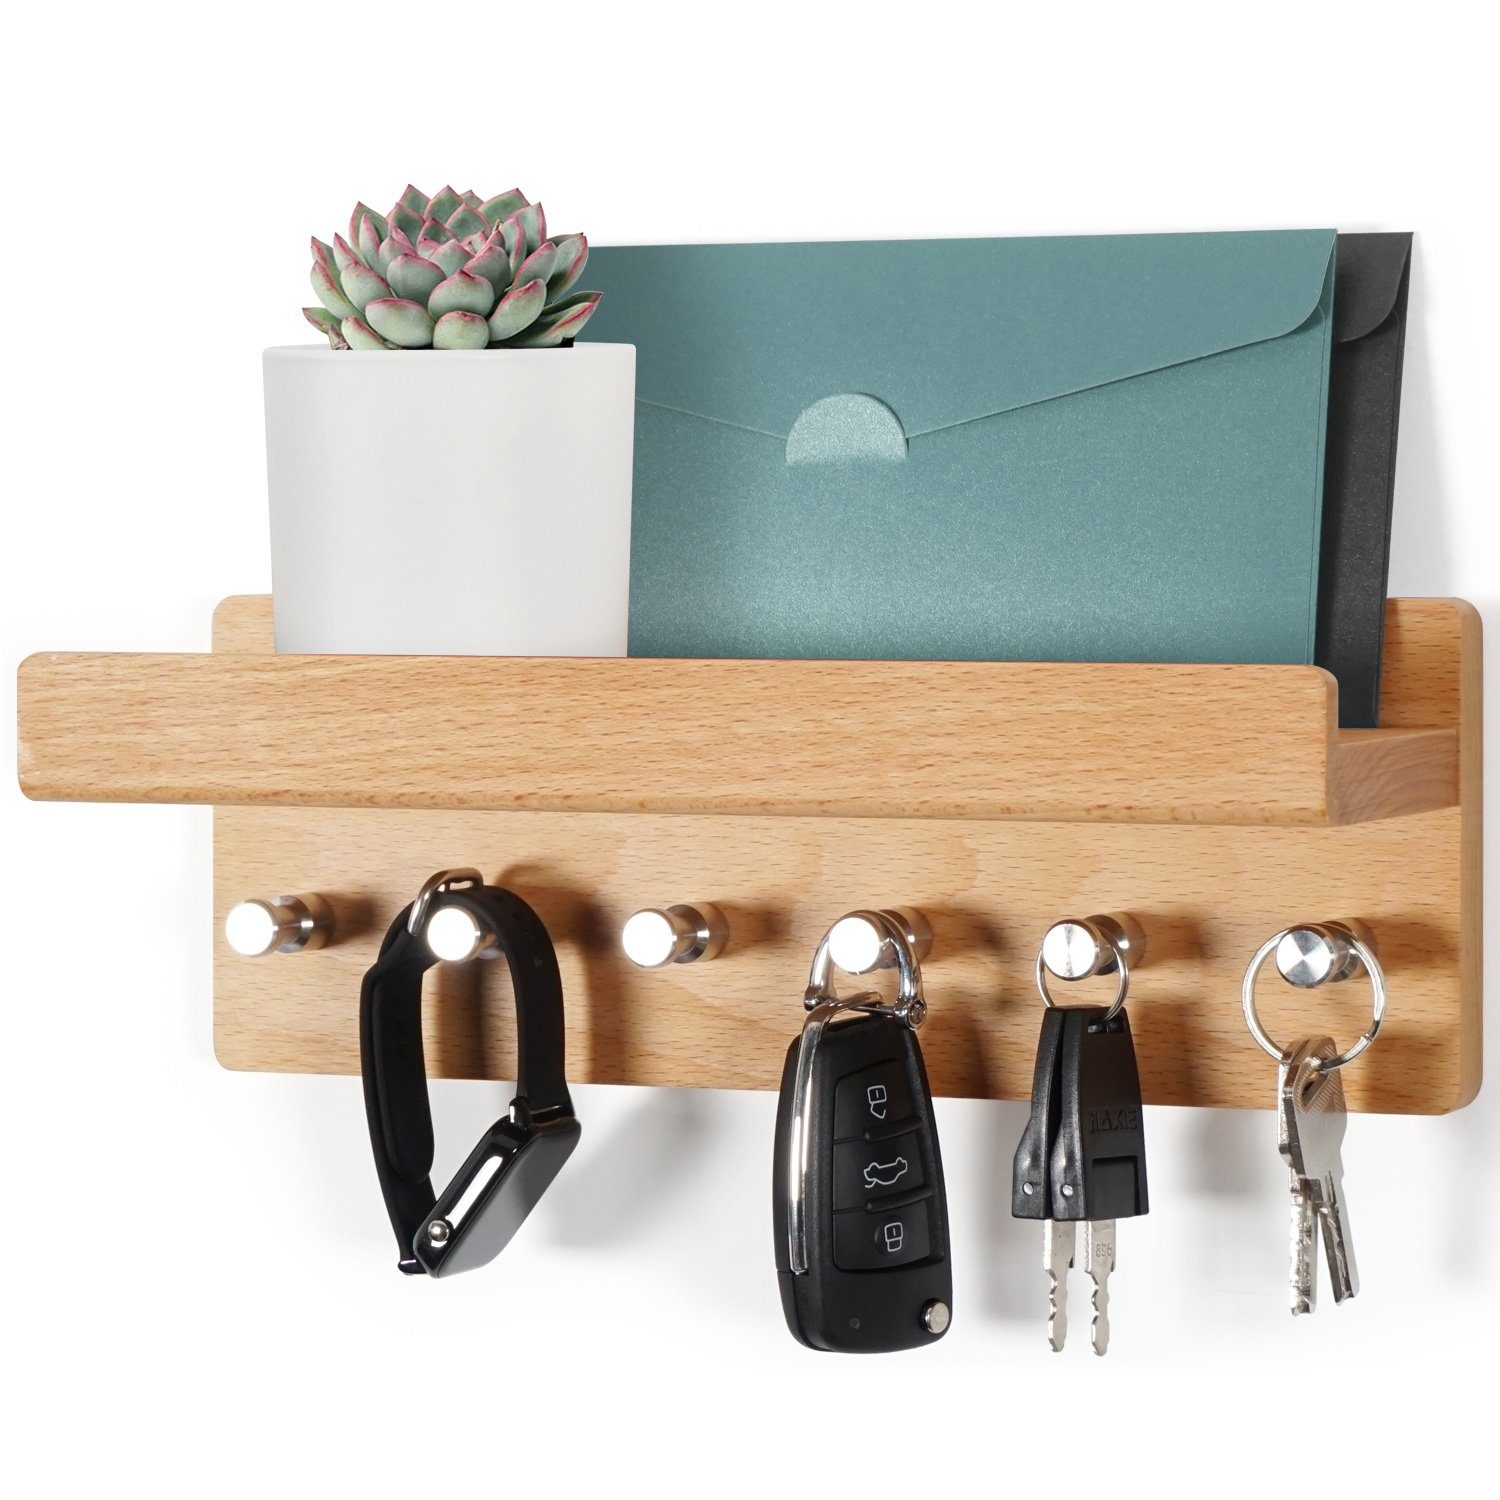 HAUSIST Schlüsselbrett Schlüsselbrett Holz mit Ablage schlüsselkasten mit  Edelstahlhaken, aus Holz mit 6 Edelstahlhaken